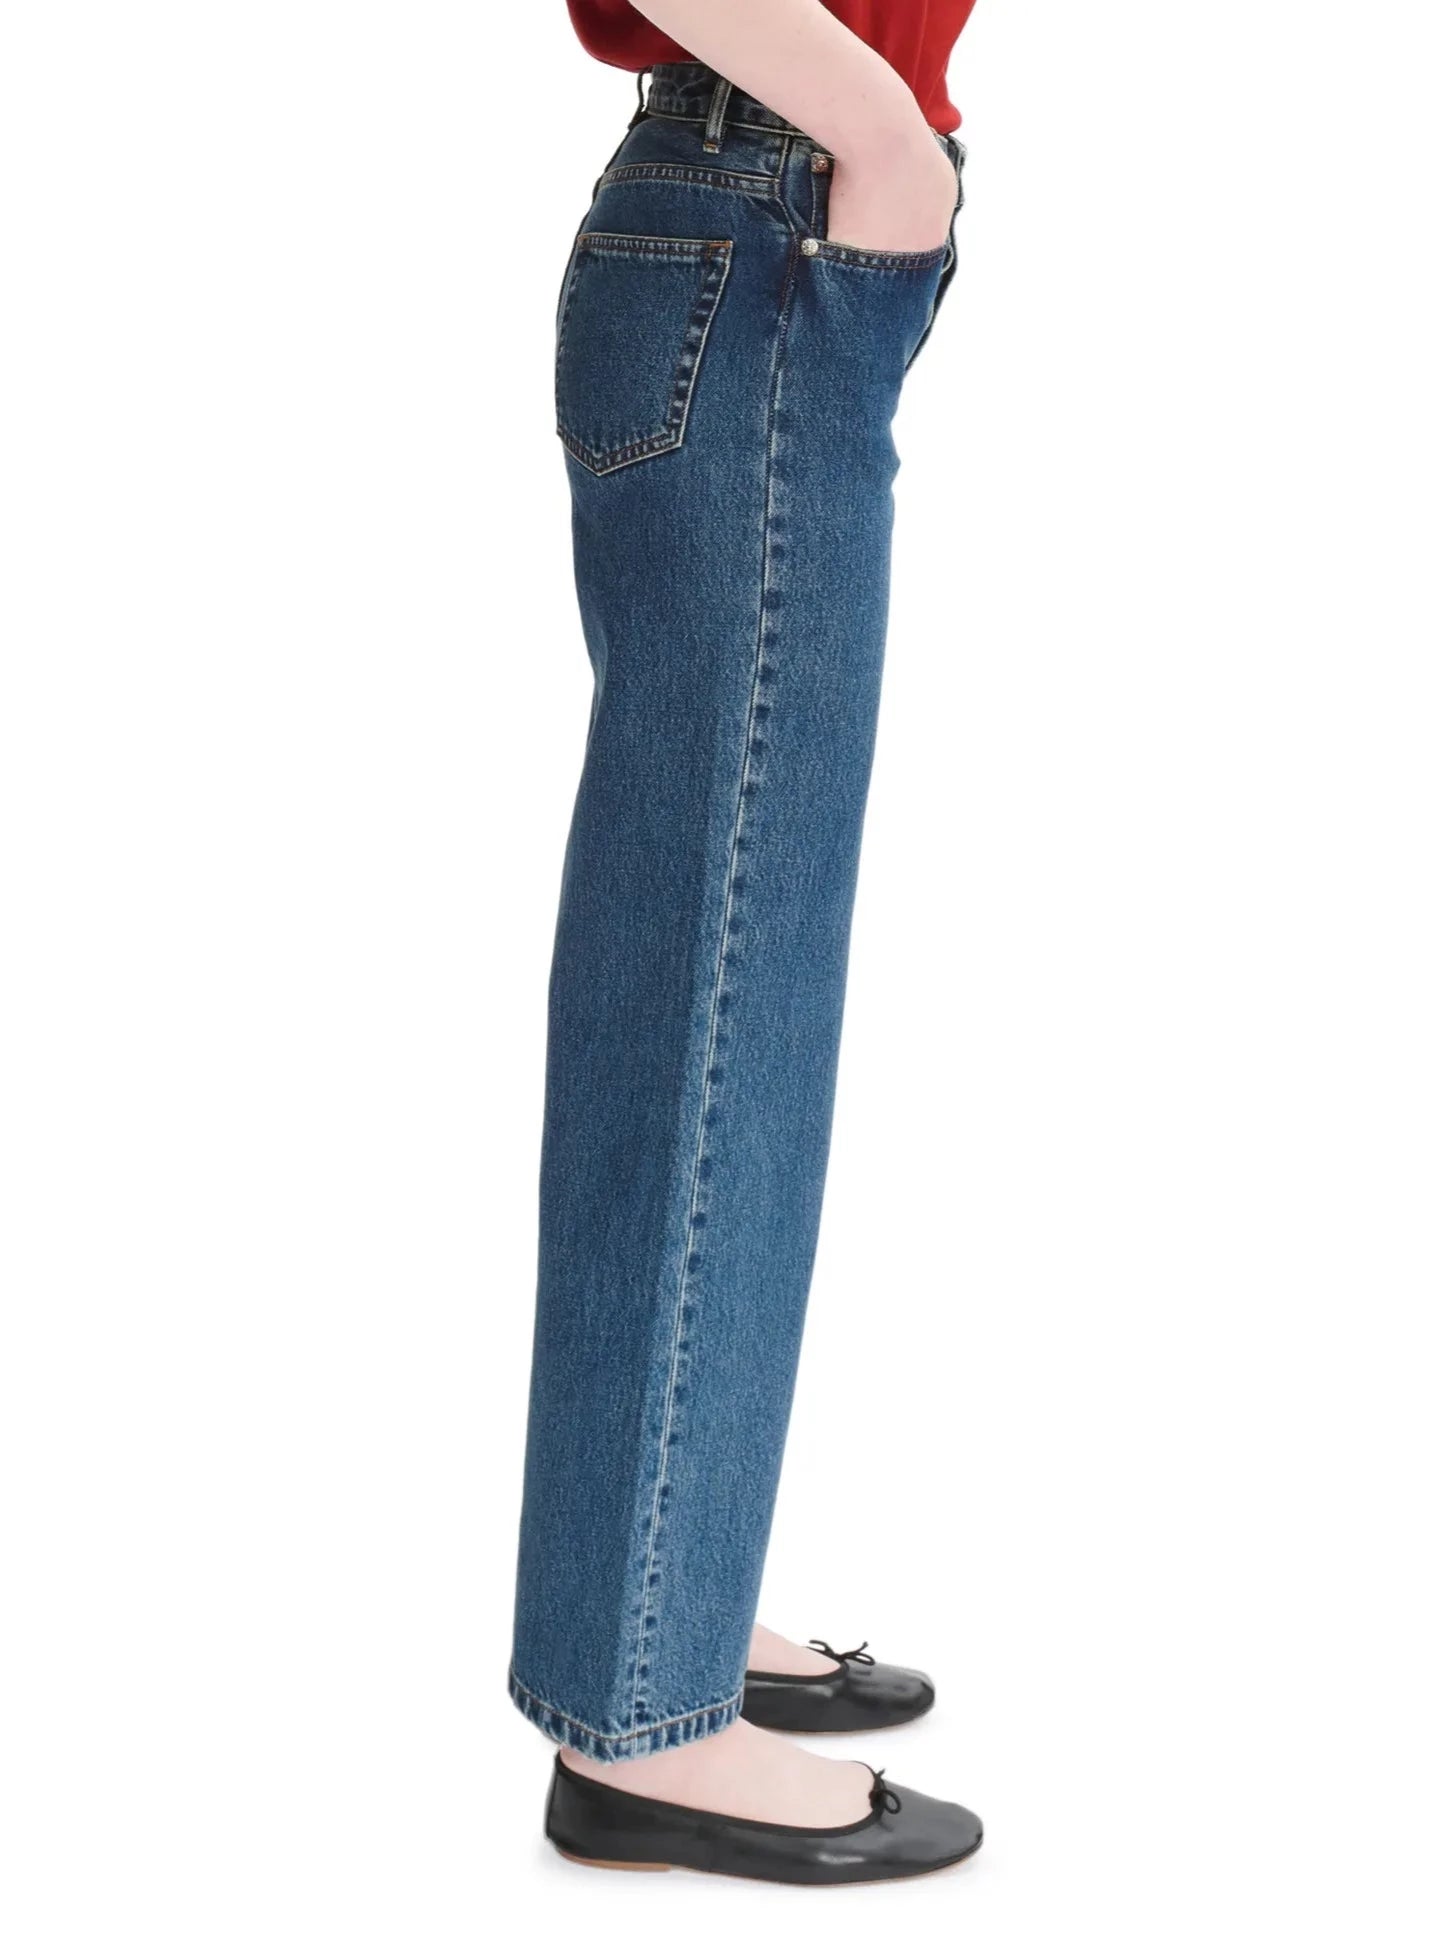 A.P.C 'Elisabeth' Jeans